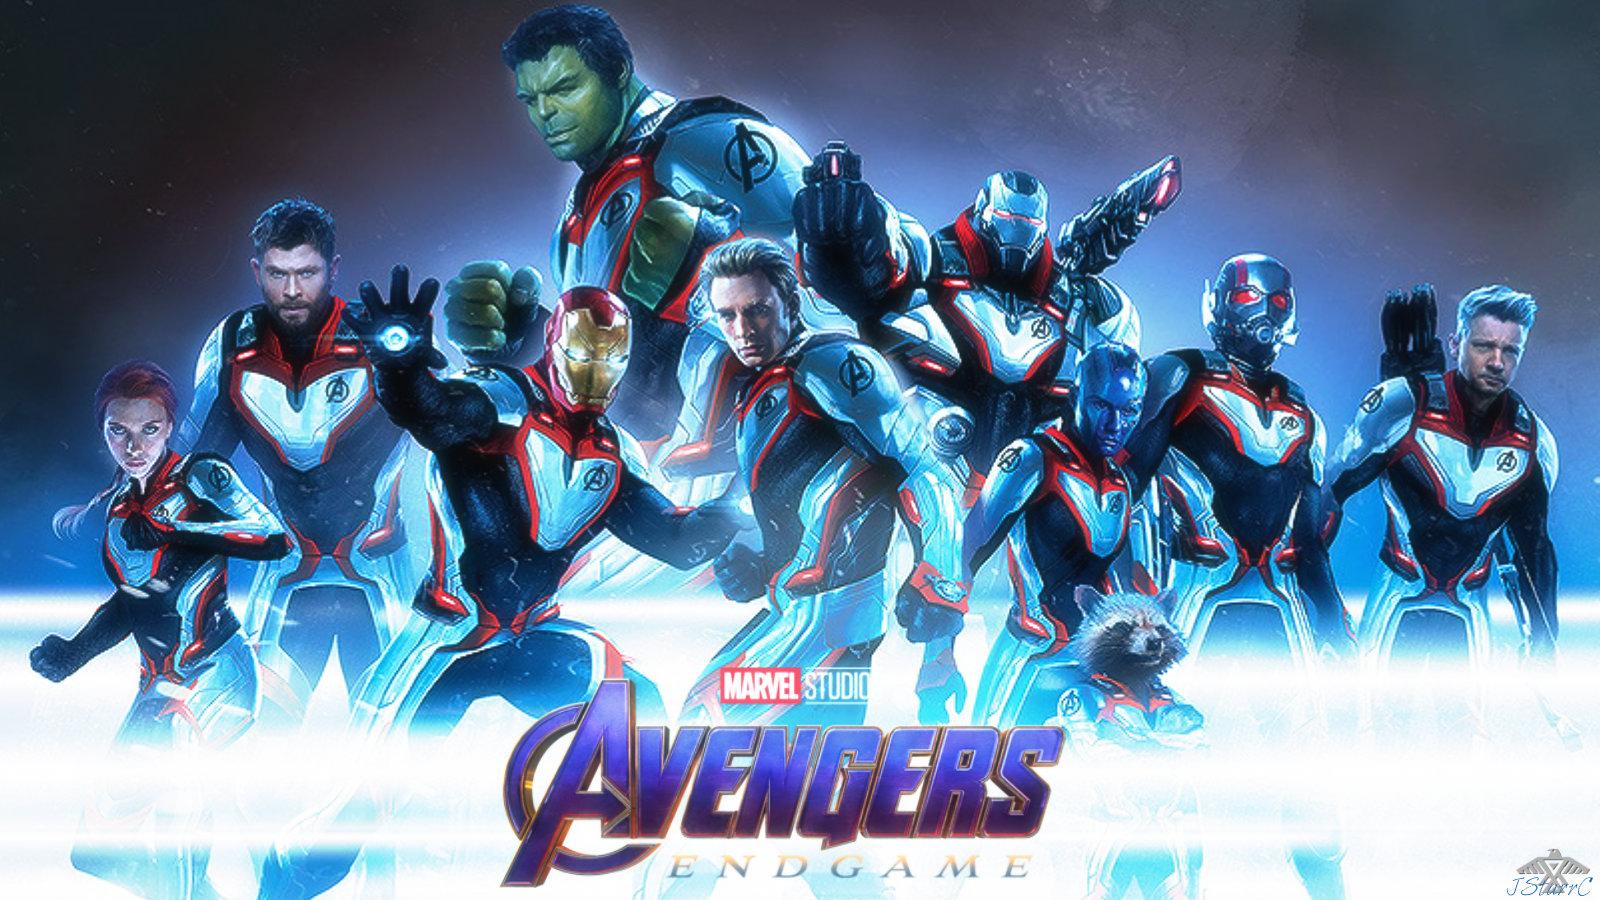 Avengers: Endgame (2019): Infinity War 1 & 2 Wallpaper